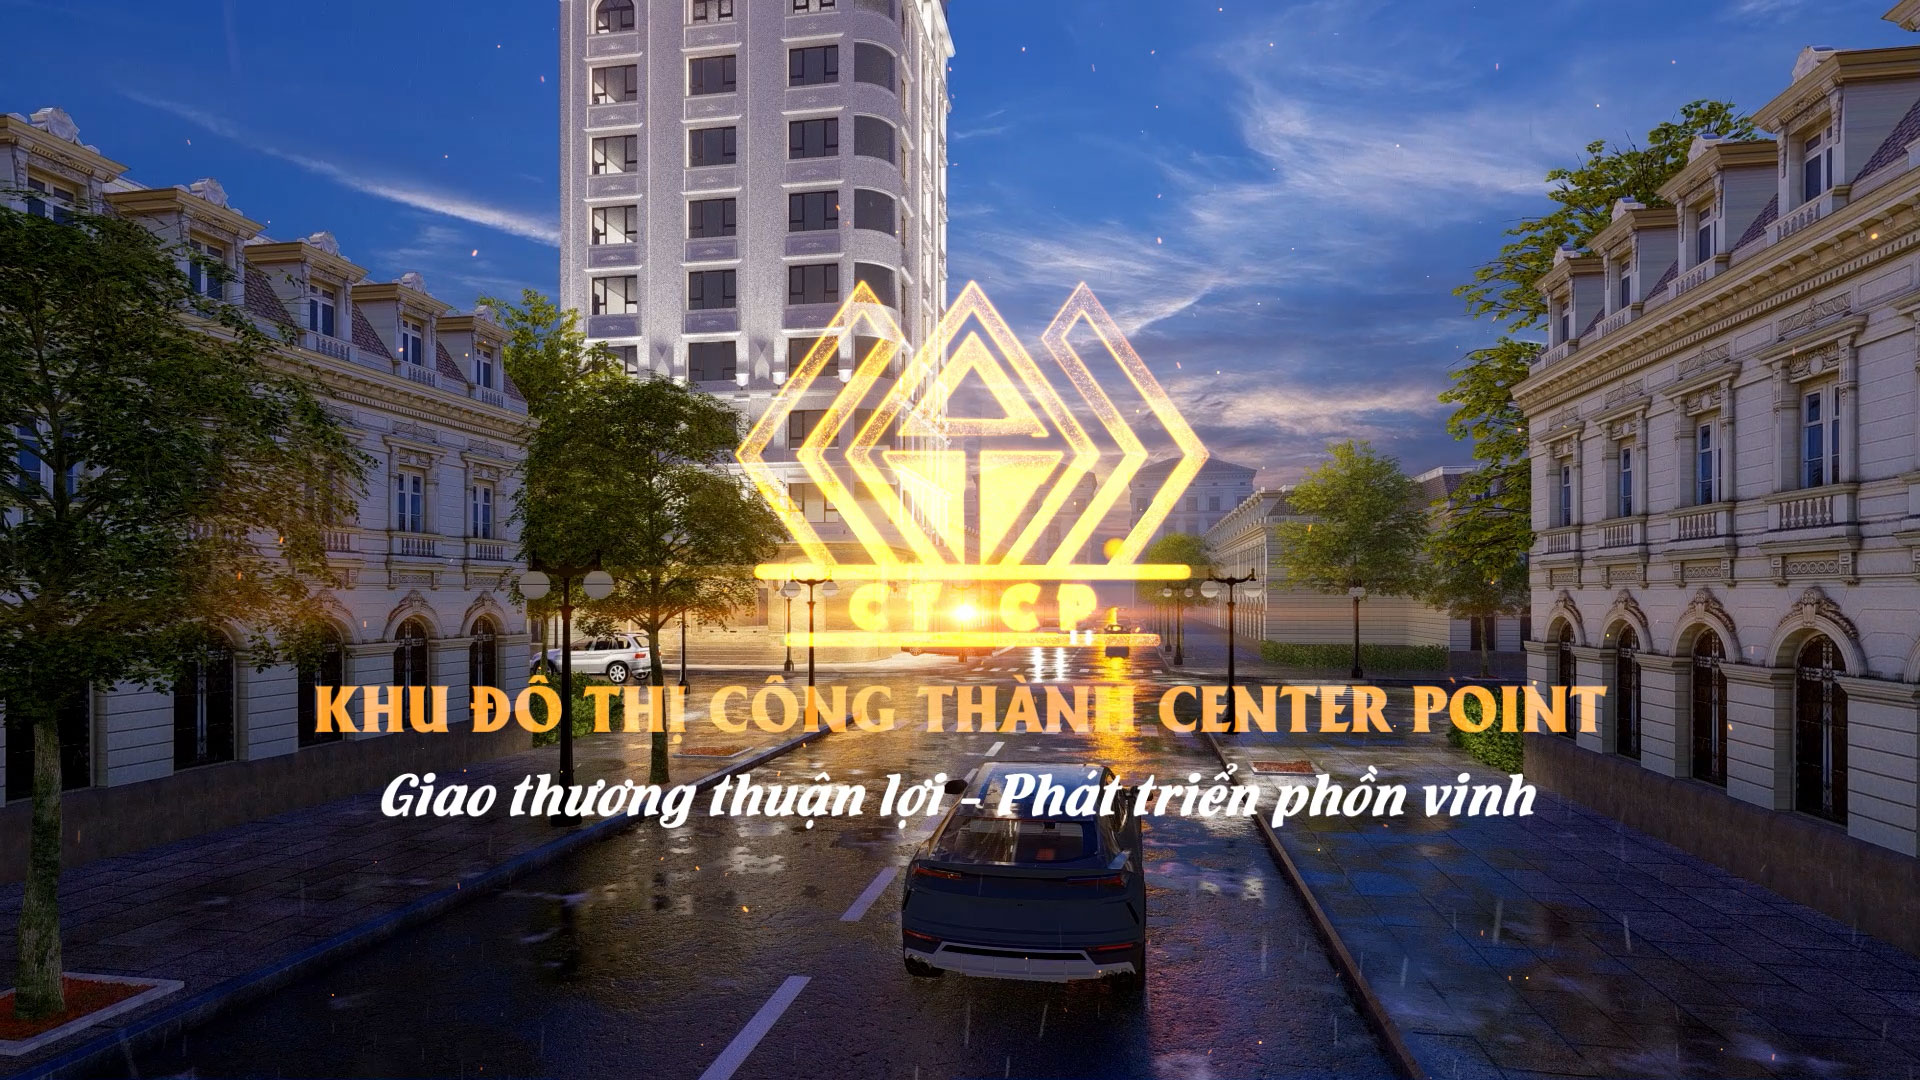 Phối cảnh dự án Khu đô thị Công Thành Center Point Bình Phước